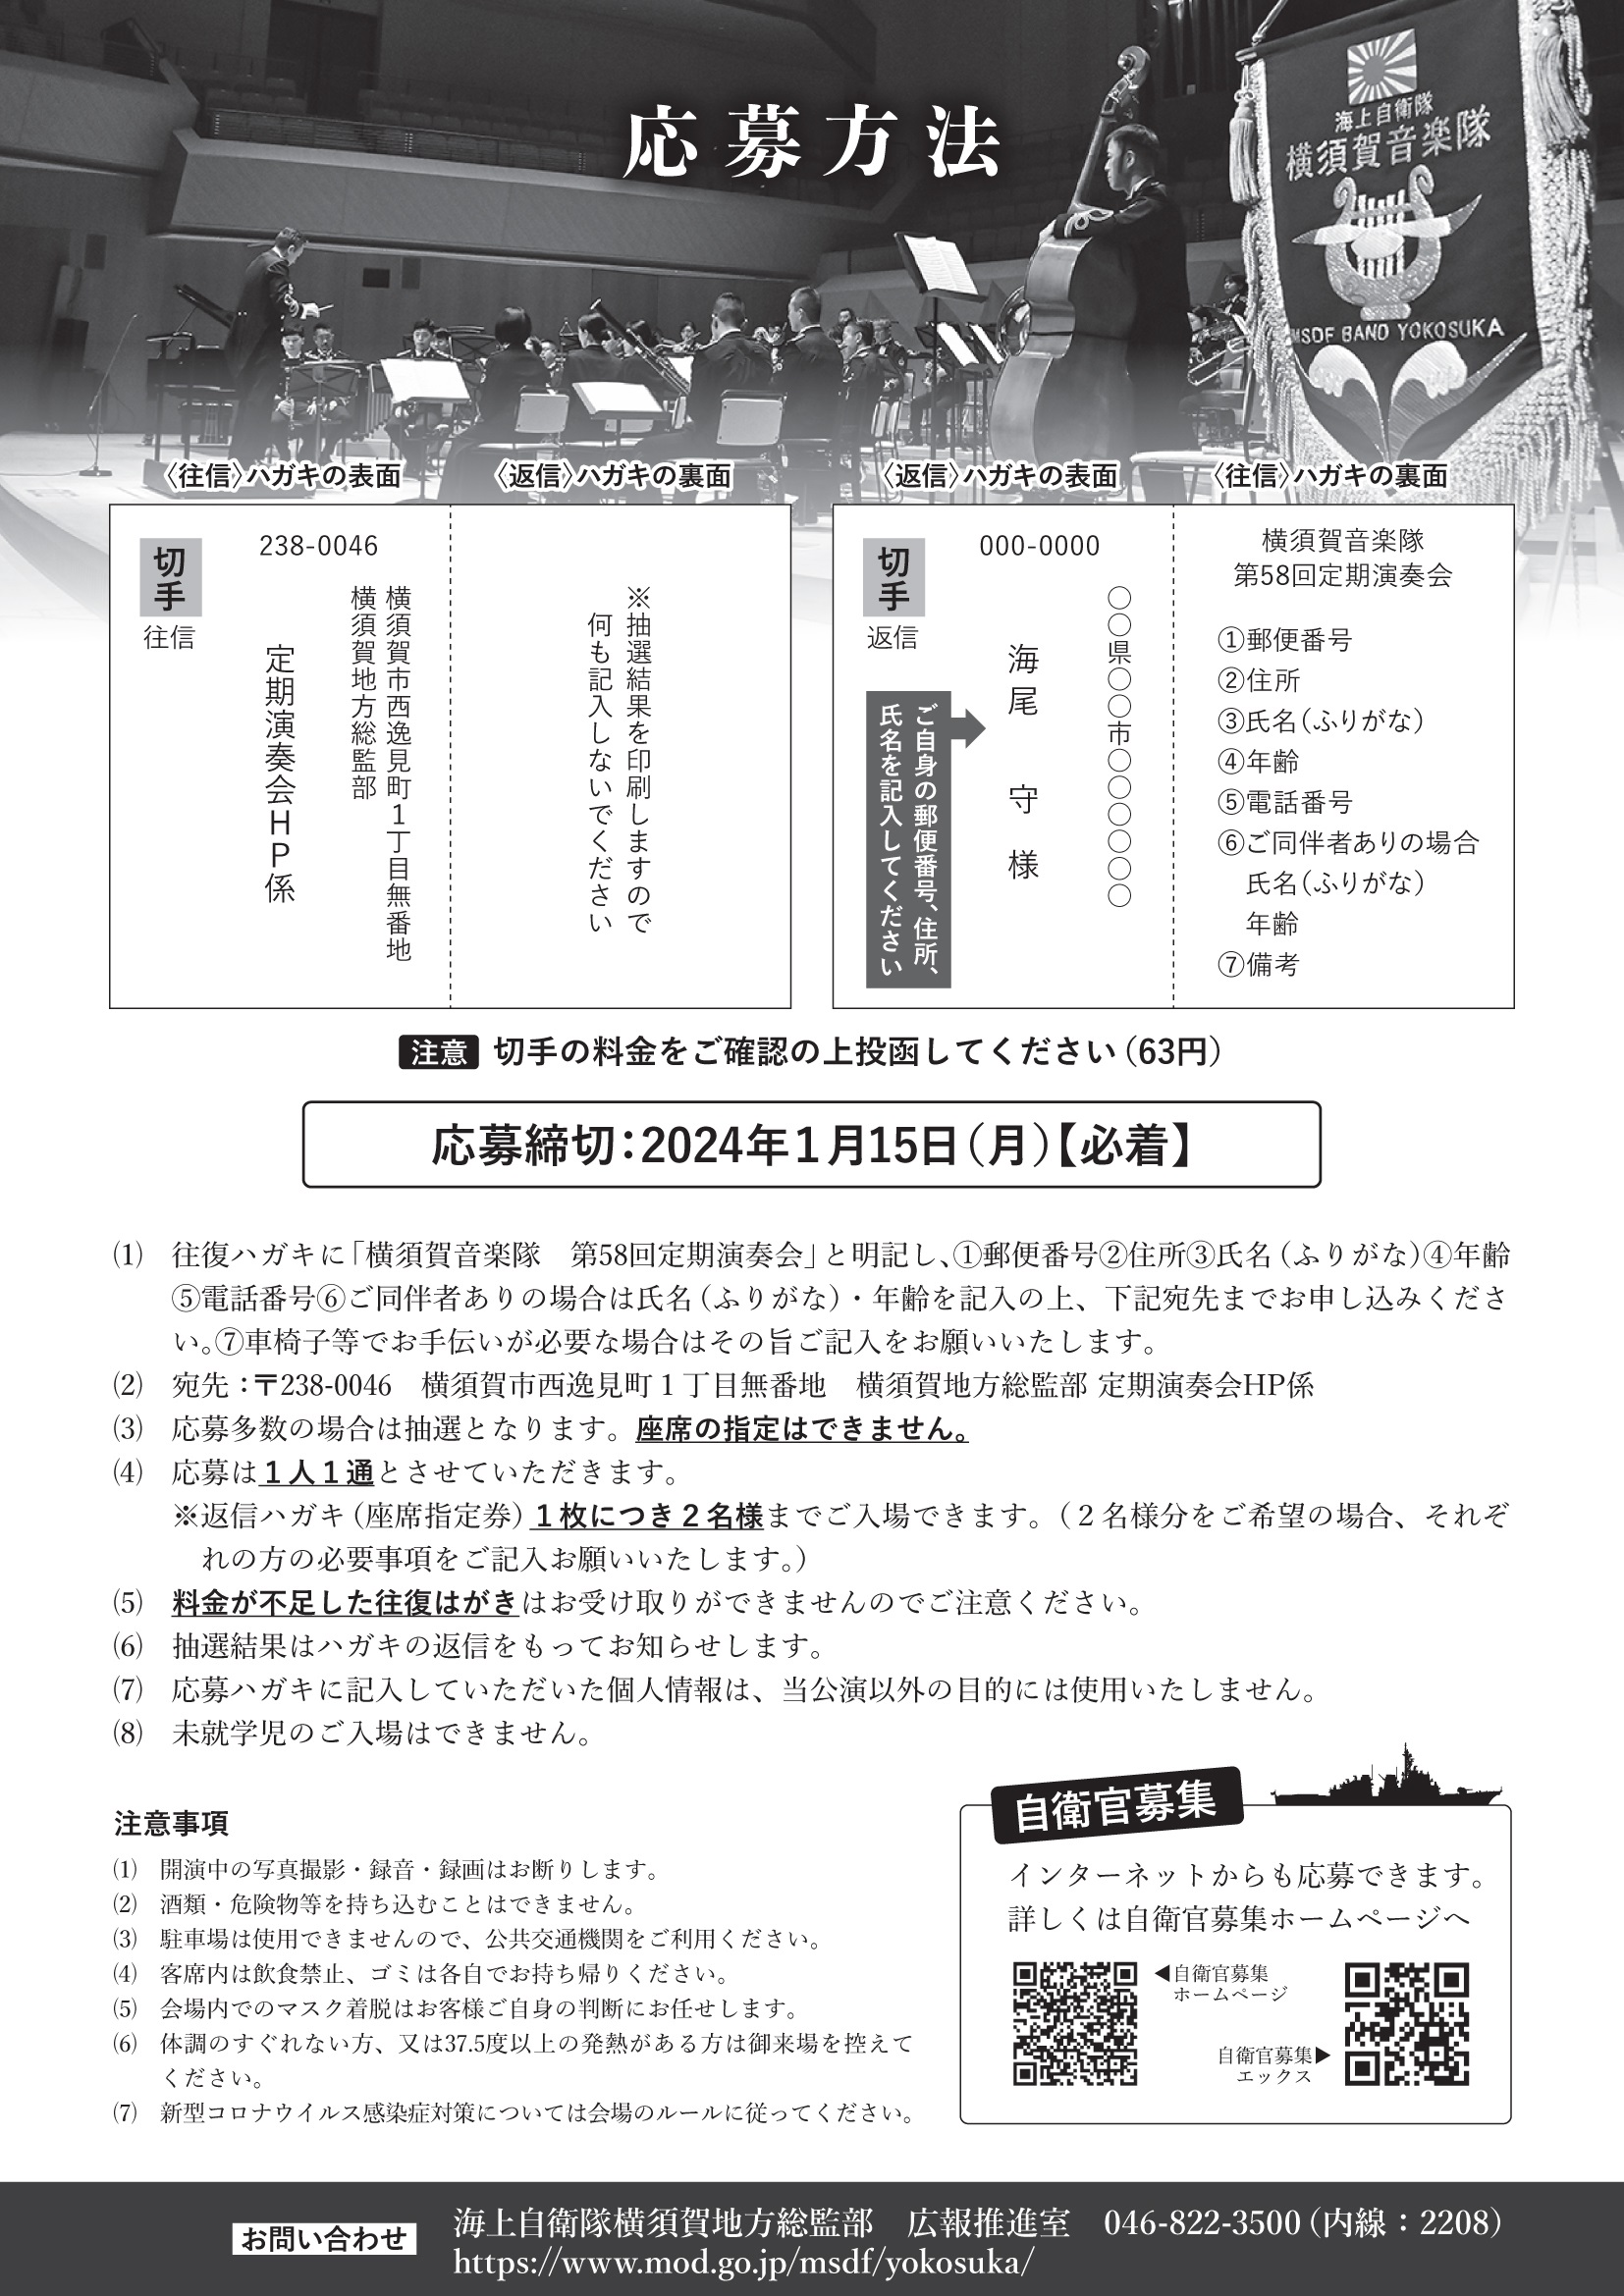 海上自衛隊 横須賀音楽隊 第58回定期演奏会：注意事項